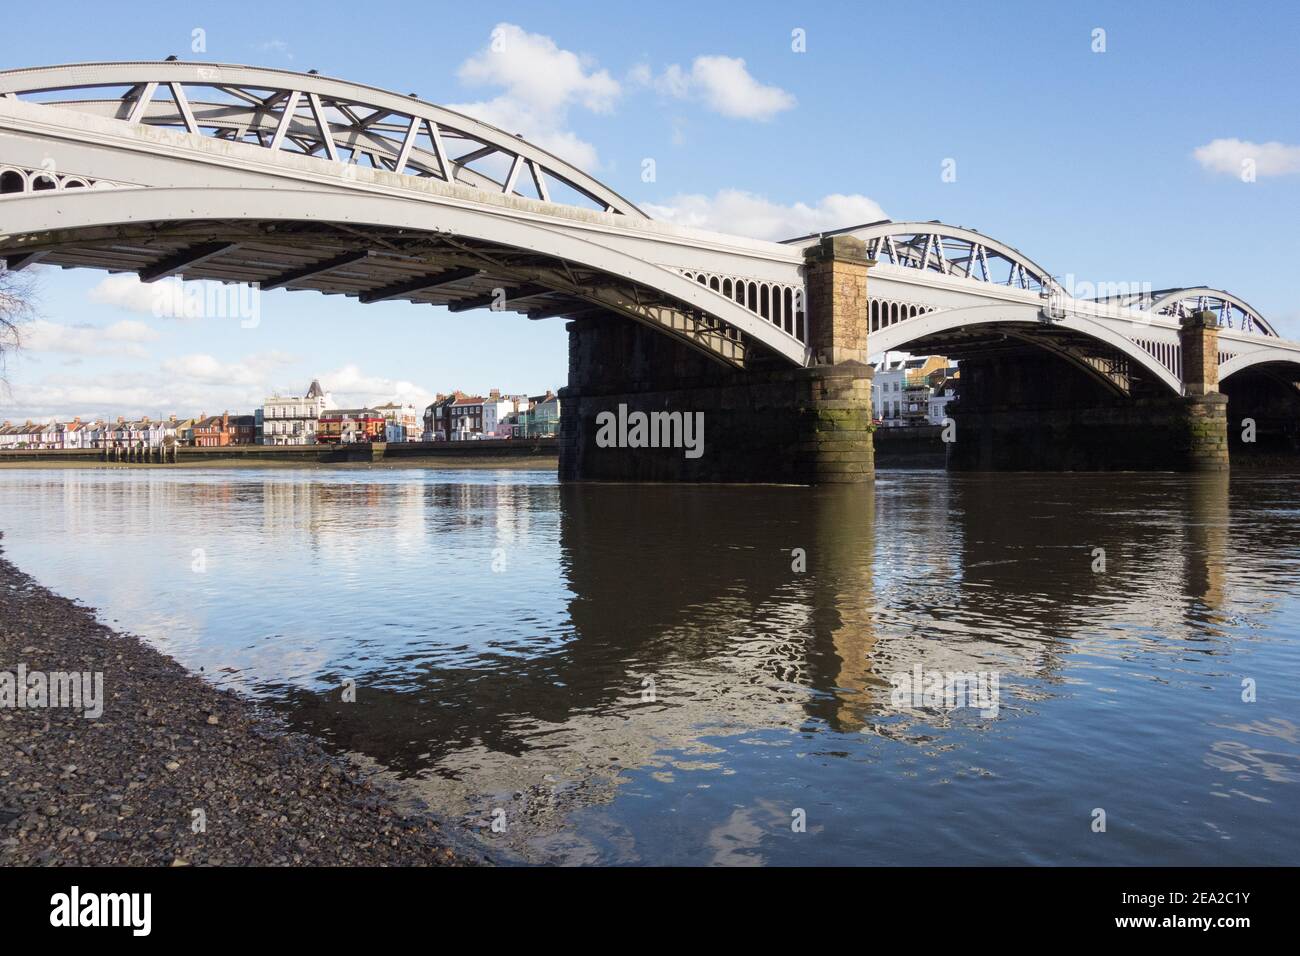 Barnes Railway Bridge dans le sud-ouest de Londres, Angleterre, Royaume-Uni Banque D'Images